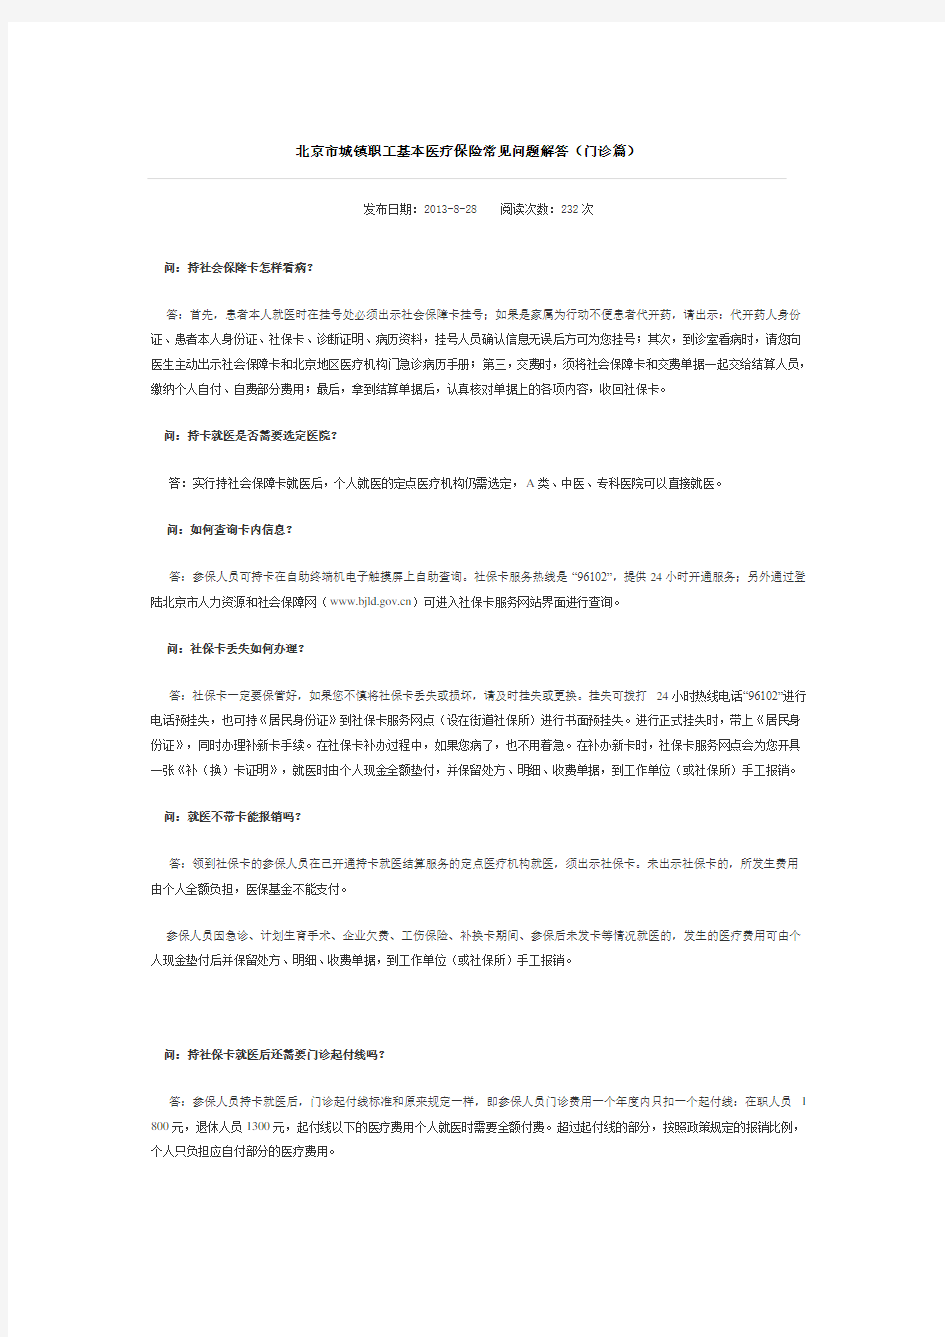 北京市城镇职工基本医疗保险常见问题解答(门诊篇)